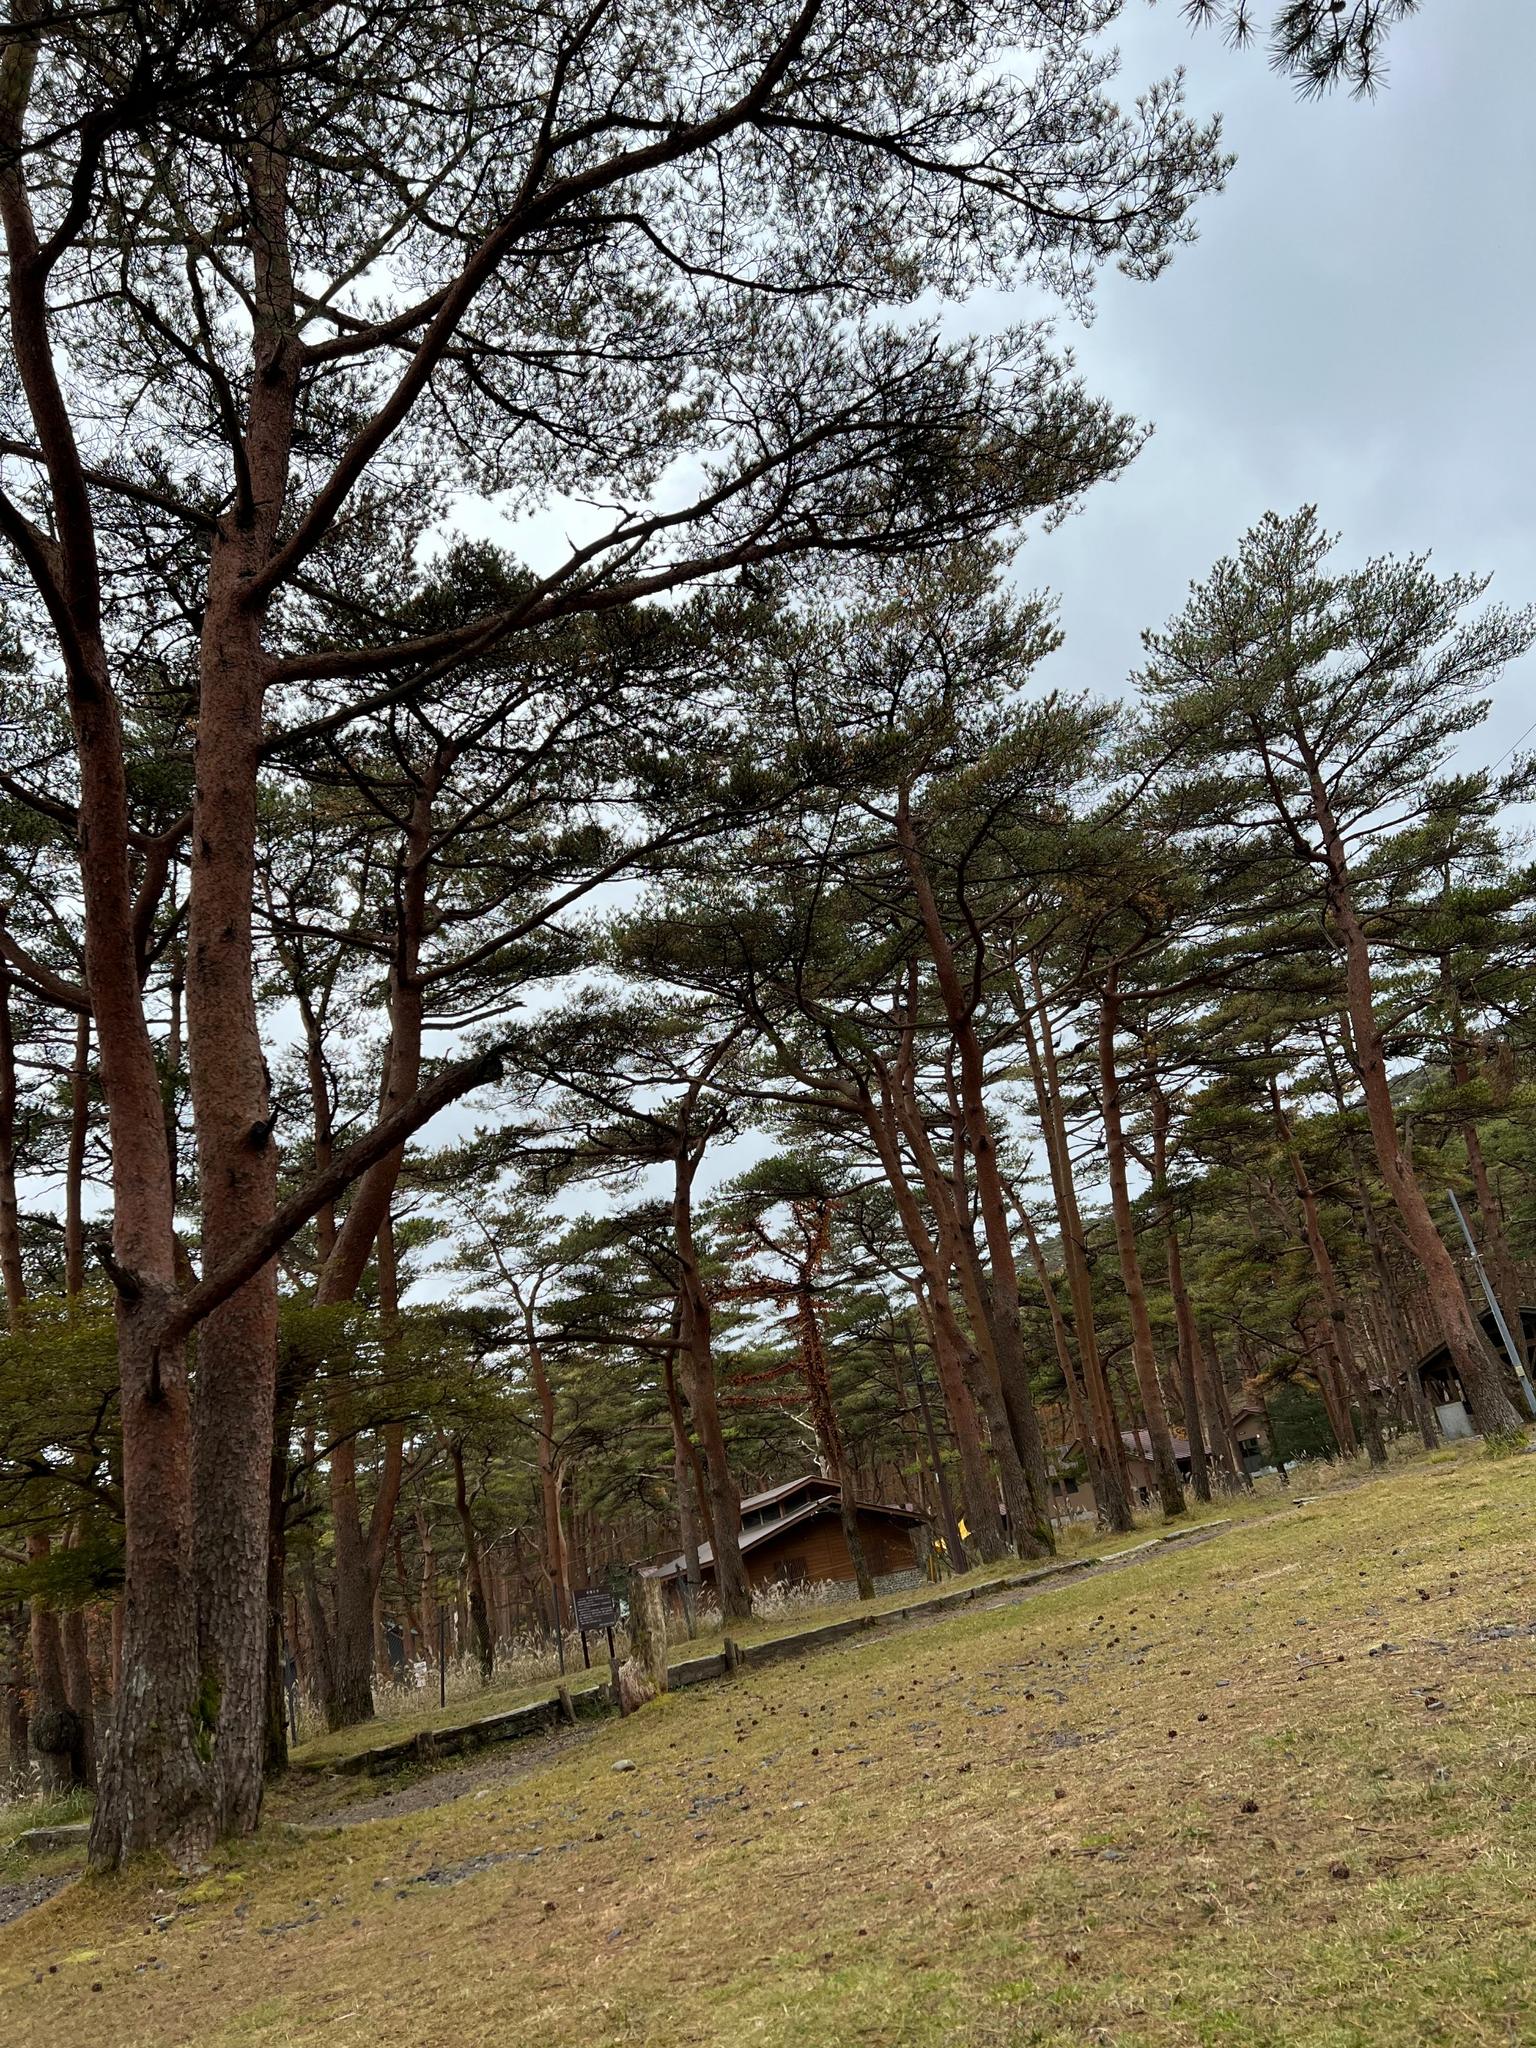 赤松の花言葉は「不老長寿」です。赤松に囲まれパワーを感じるキャンプは、えびの高原ならではです。